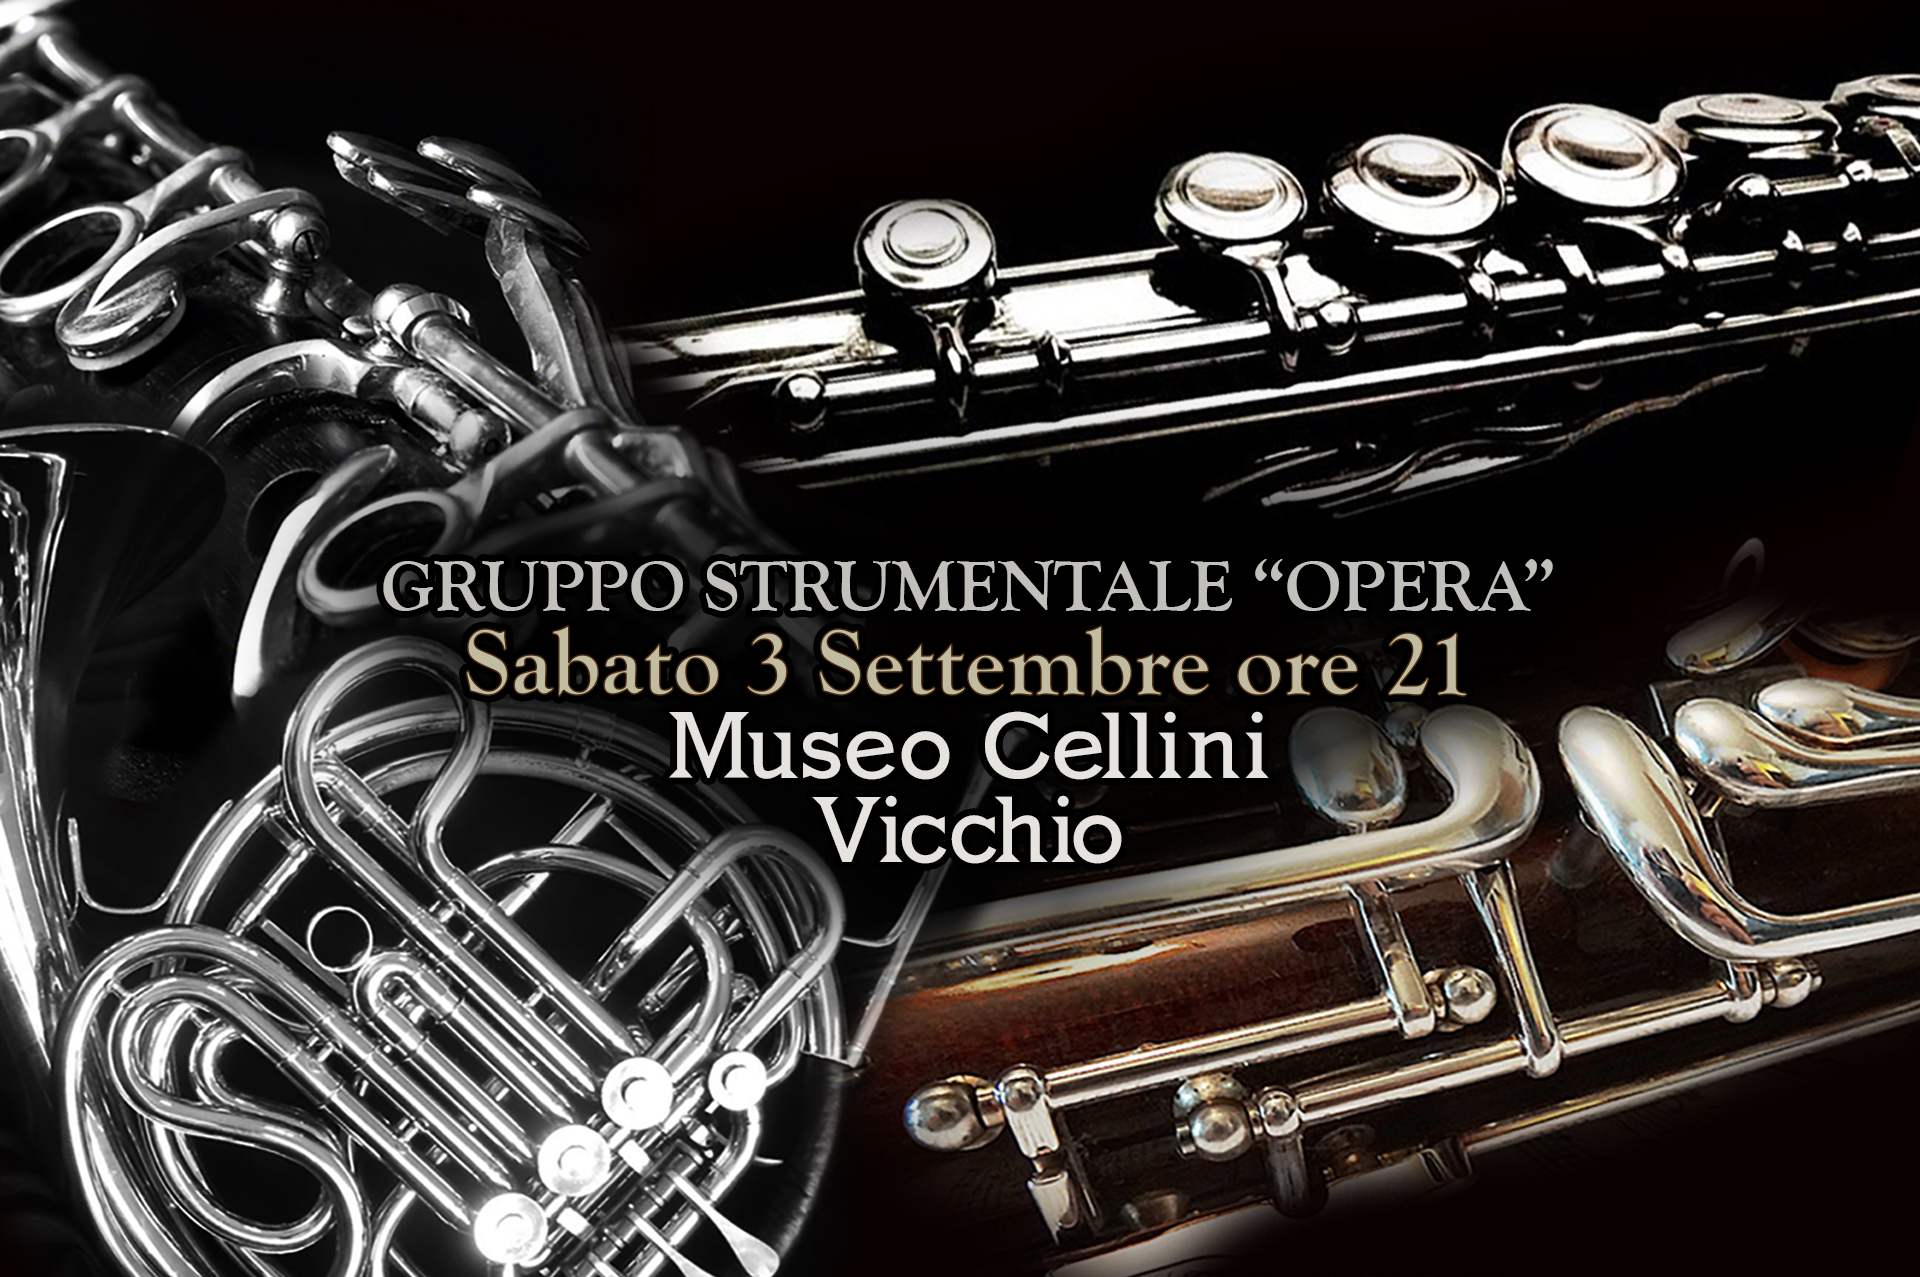 Gruppo Strumentale “Opera” Sabato 3 Settembre ore 21 Museo Cellini, Vicchio